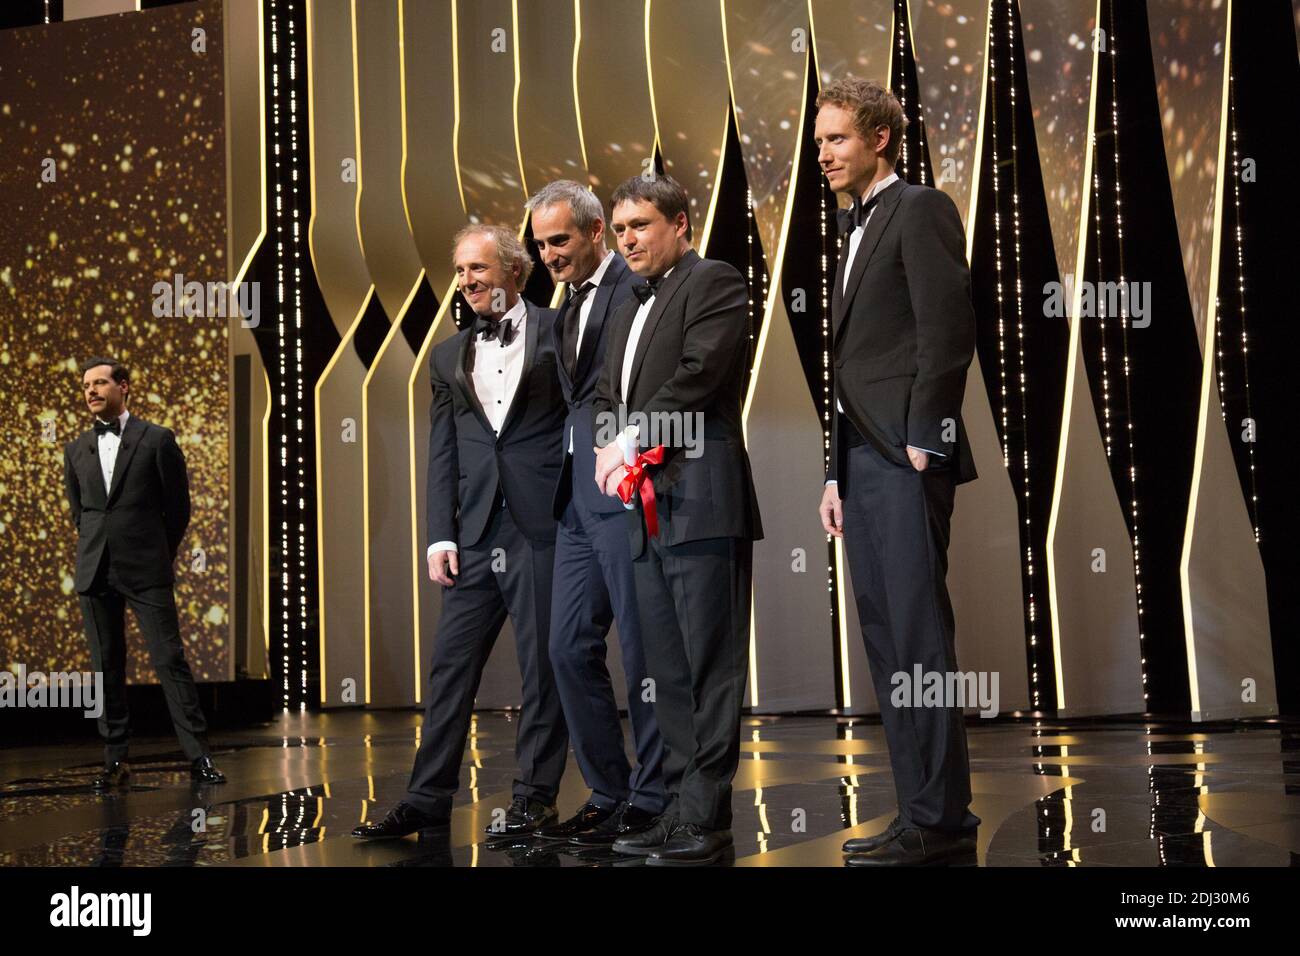 Olivier Assayas Cristian Mungiu Prix De La Mise En Scene Ex Aequo Cannes Ceremonie